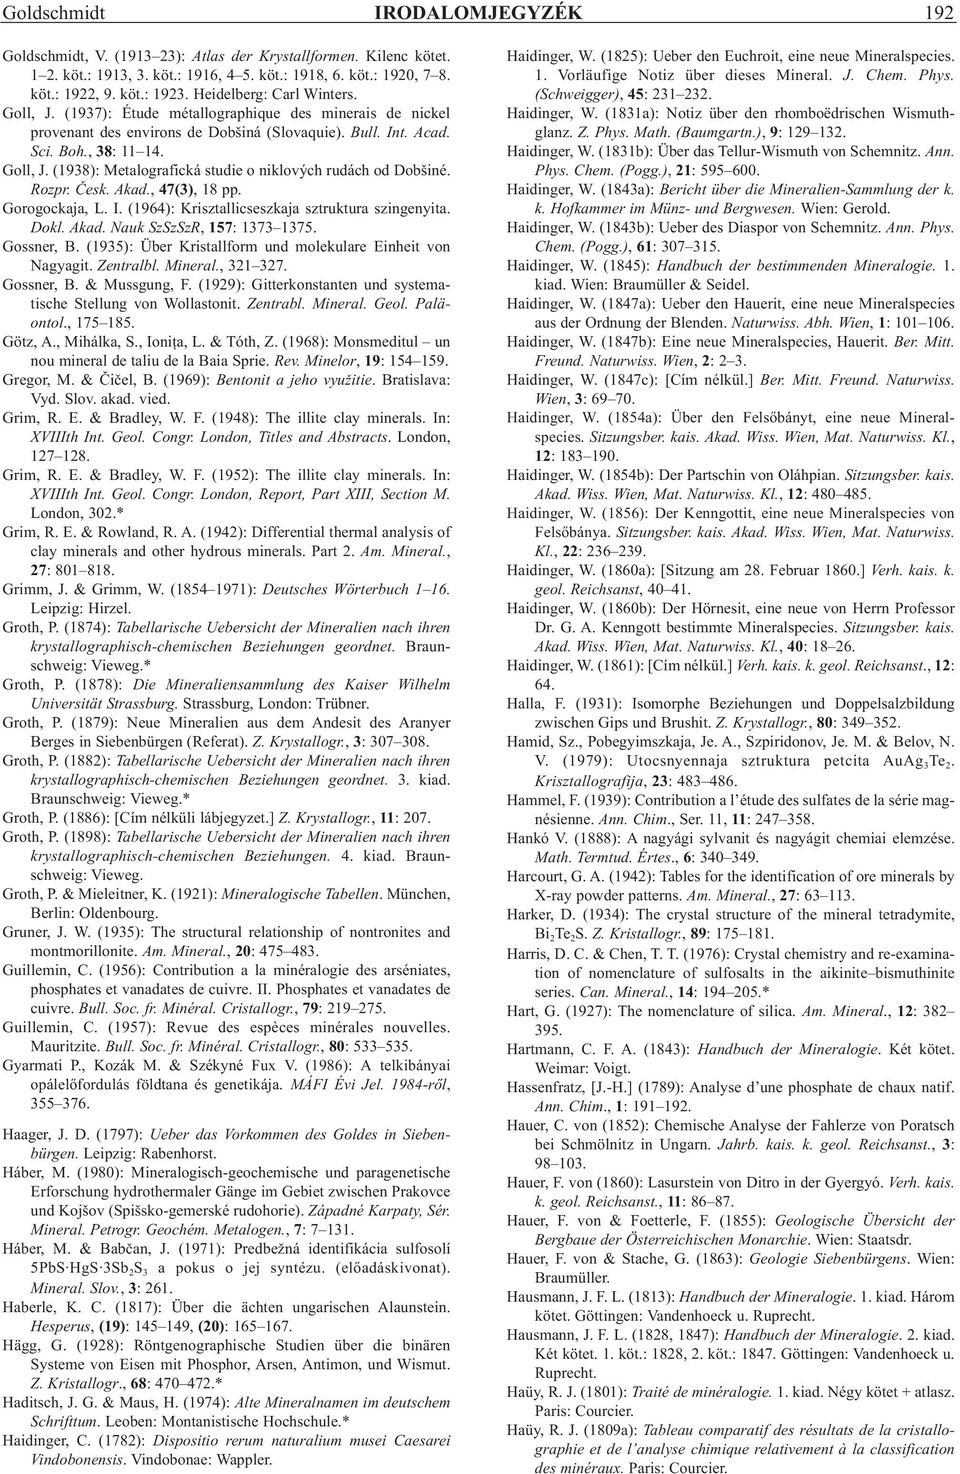 Rozpr. Èesk. Akad., 47(3), 18 pp. Gorogockaja, L. I. (1964): Krisztallicseszkaja sztruktura szingenyita. Dokl. Akad. Nauk SzSzSzR, 157: 1373 1375. Gossner, B.